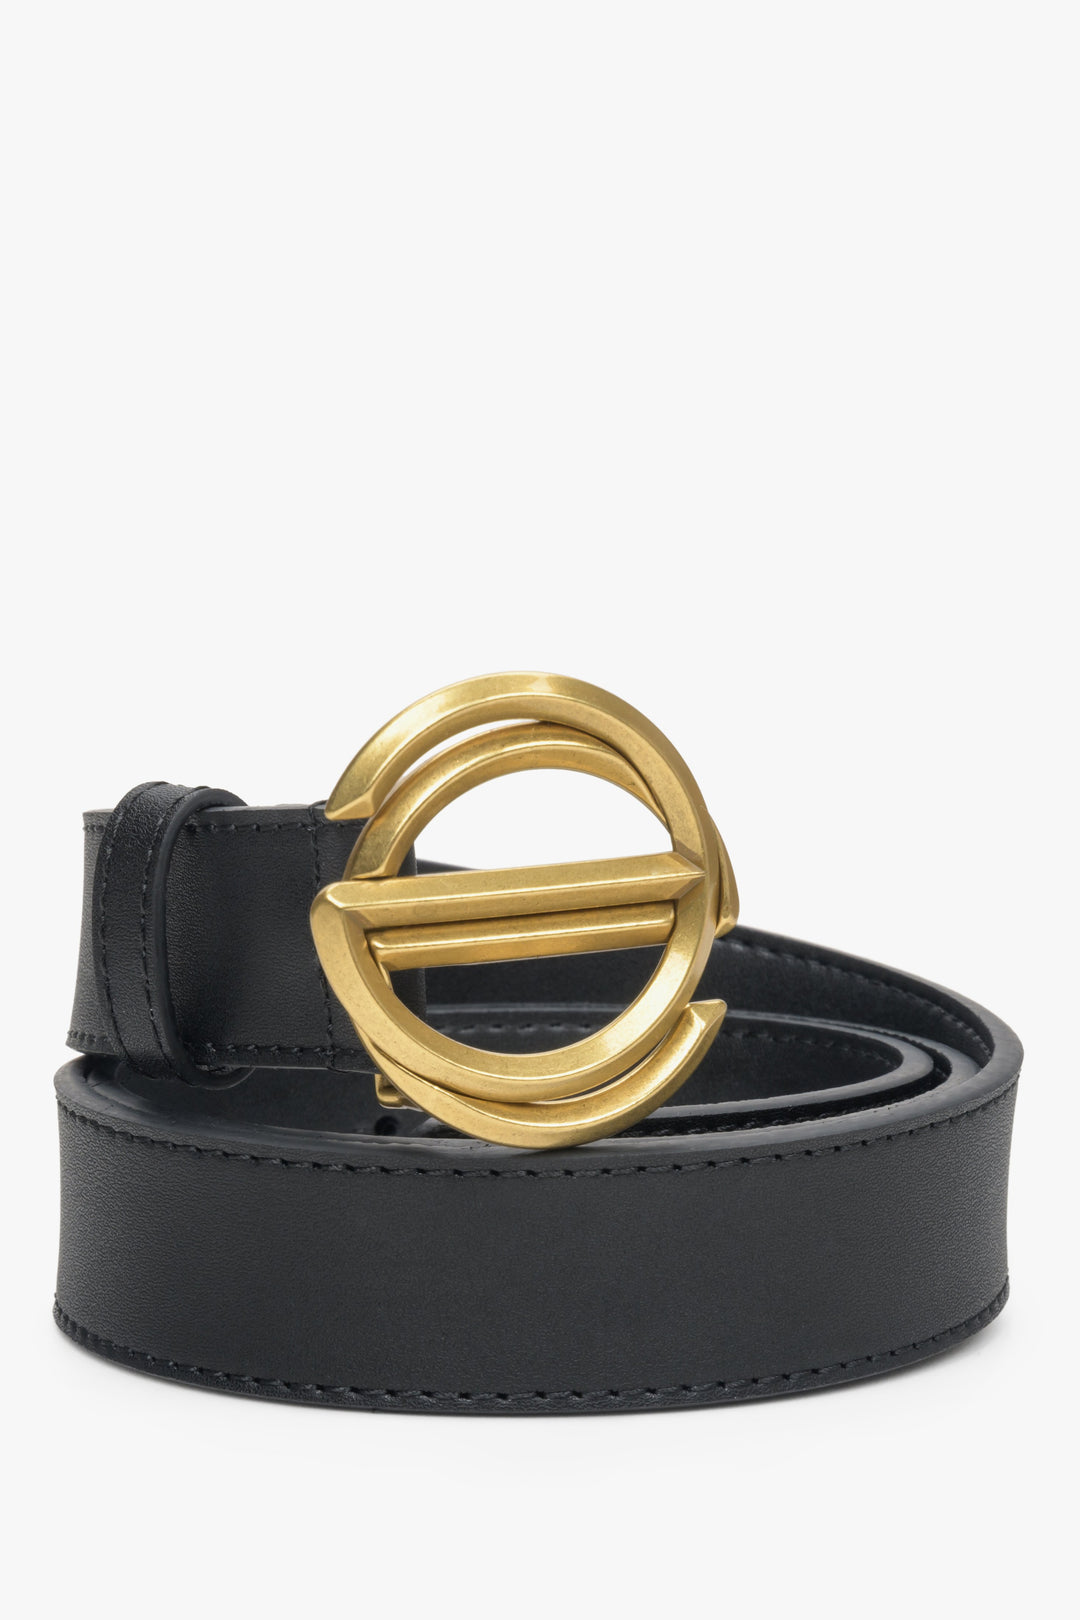 Black women's belt with gold buckle Estro.